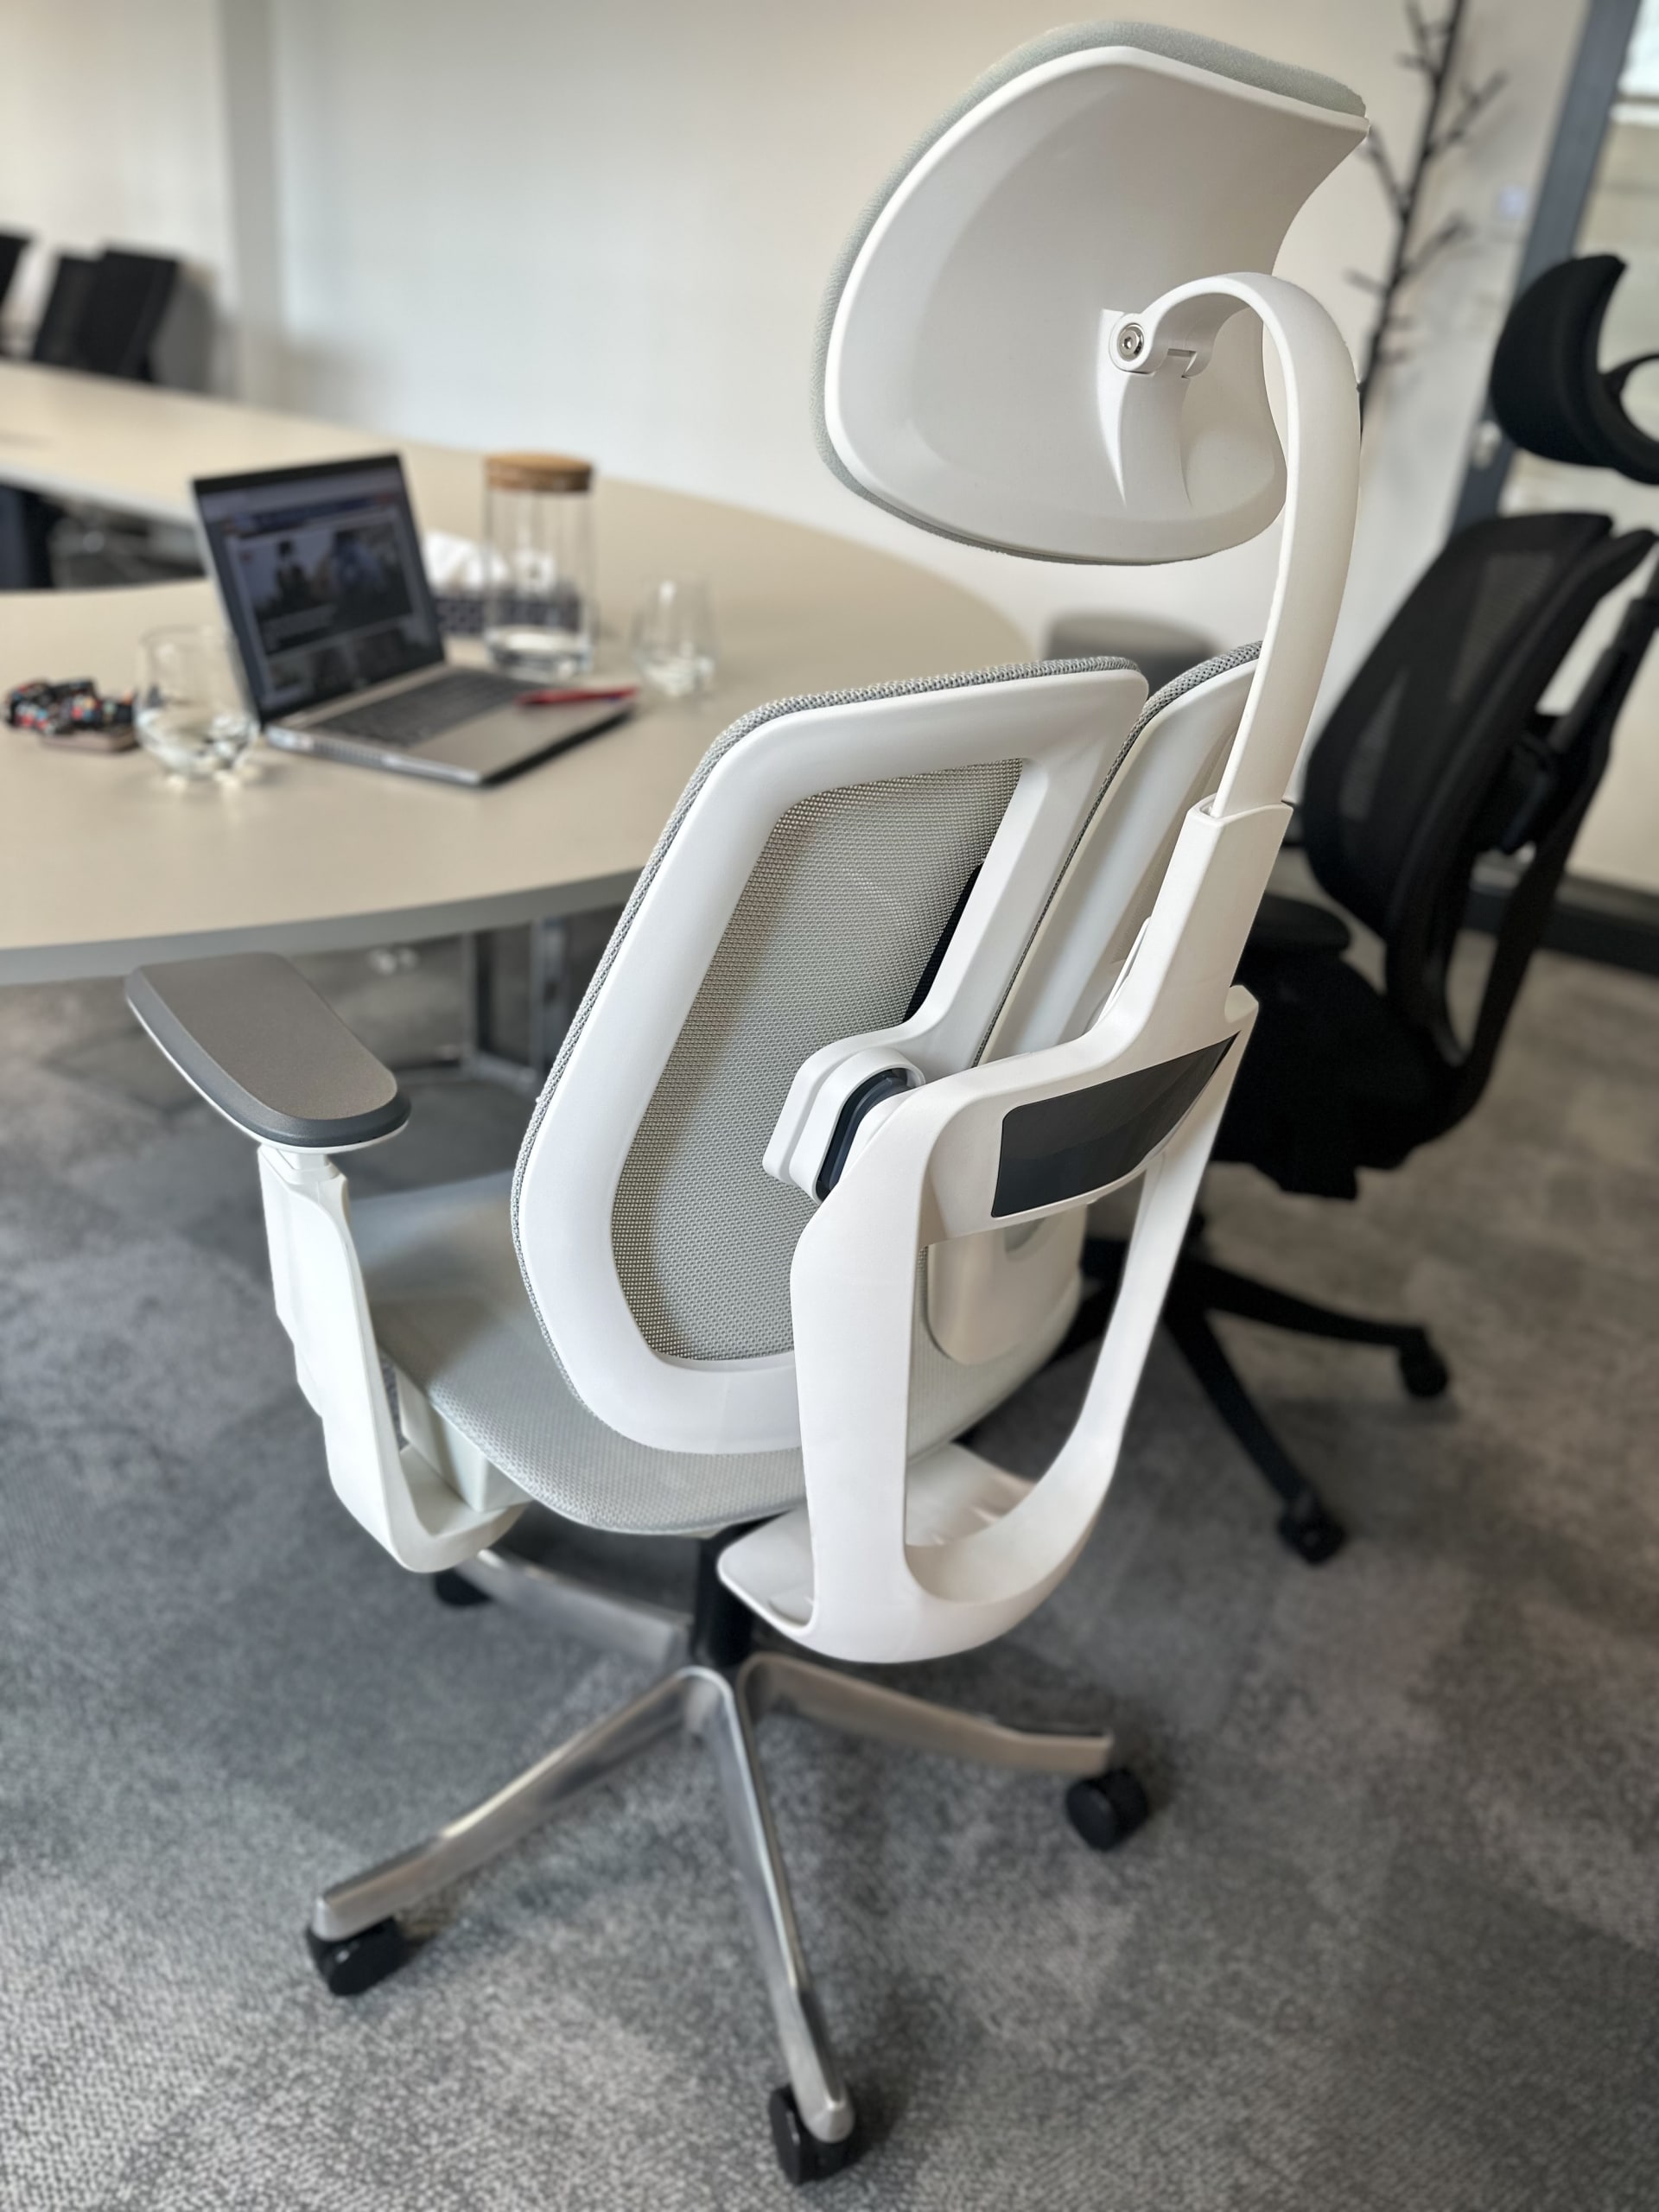 Vyzkoušeli jsme kancelářské židle Liftor Active